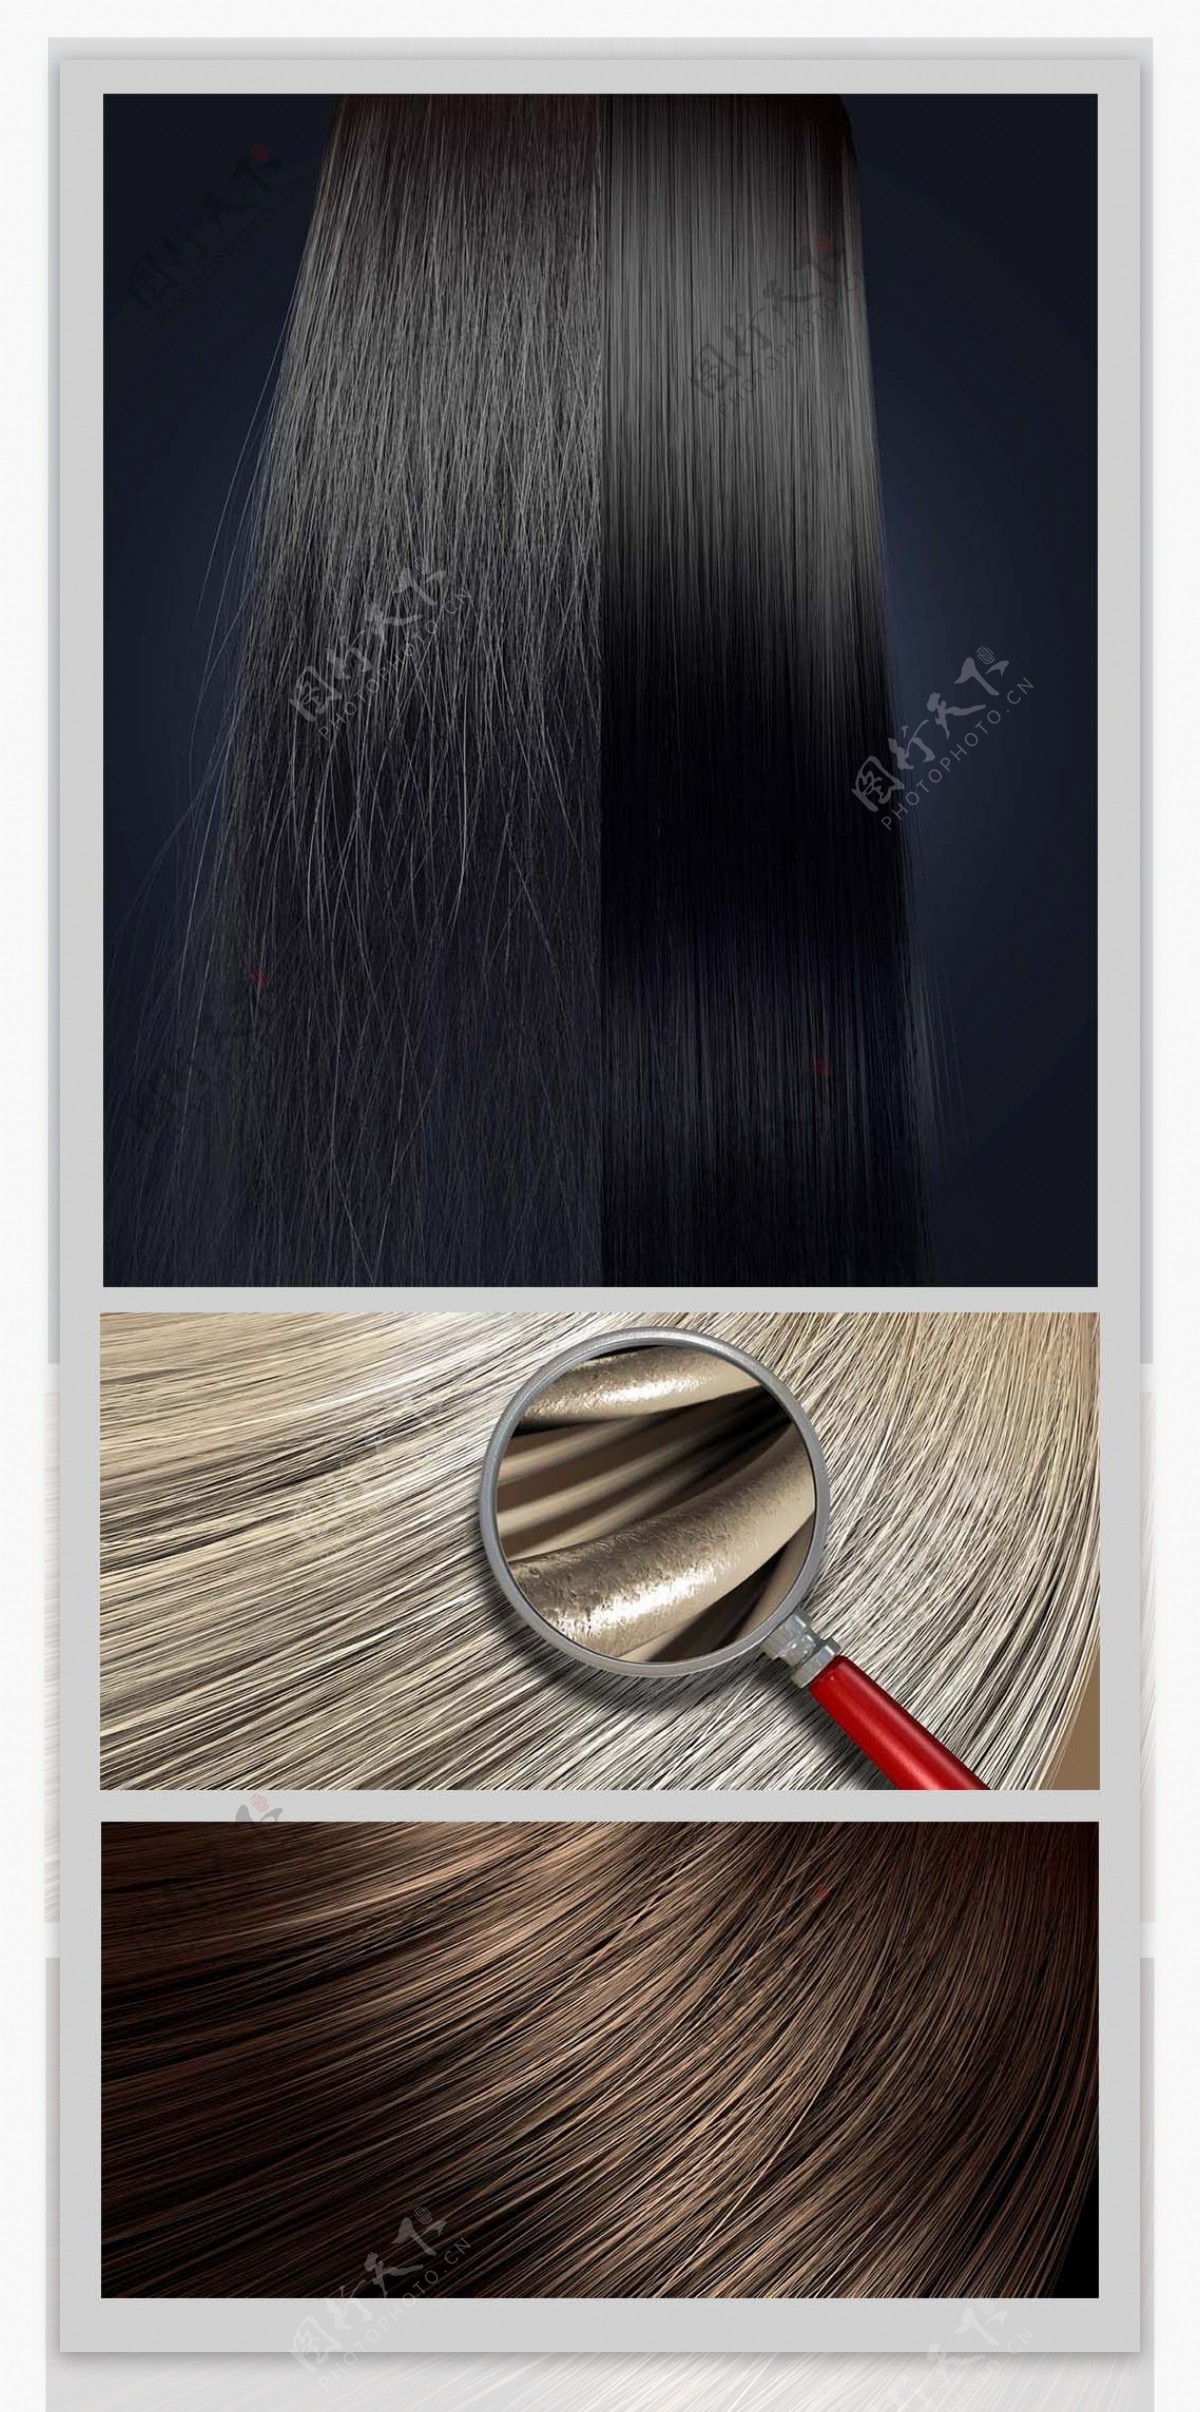 深黑色头发纹理 库存照片. 图片 包括有 自然, 高雅, 理发, 发型, 抽象, 完美, 头发, 黑暗, 扩展名 - 72393496